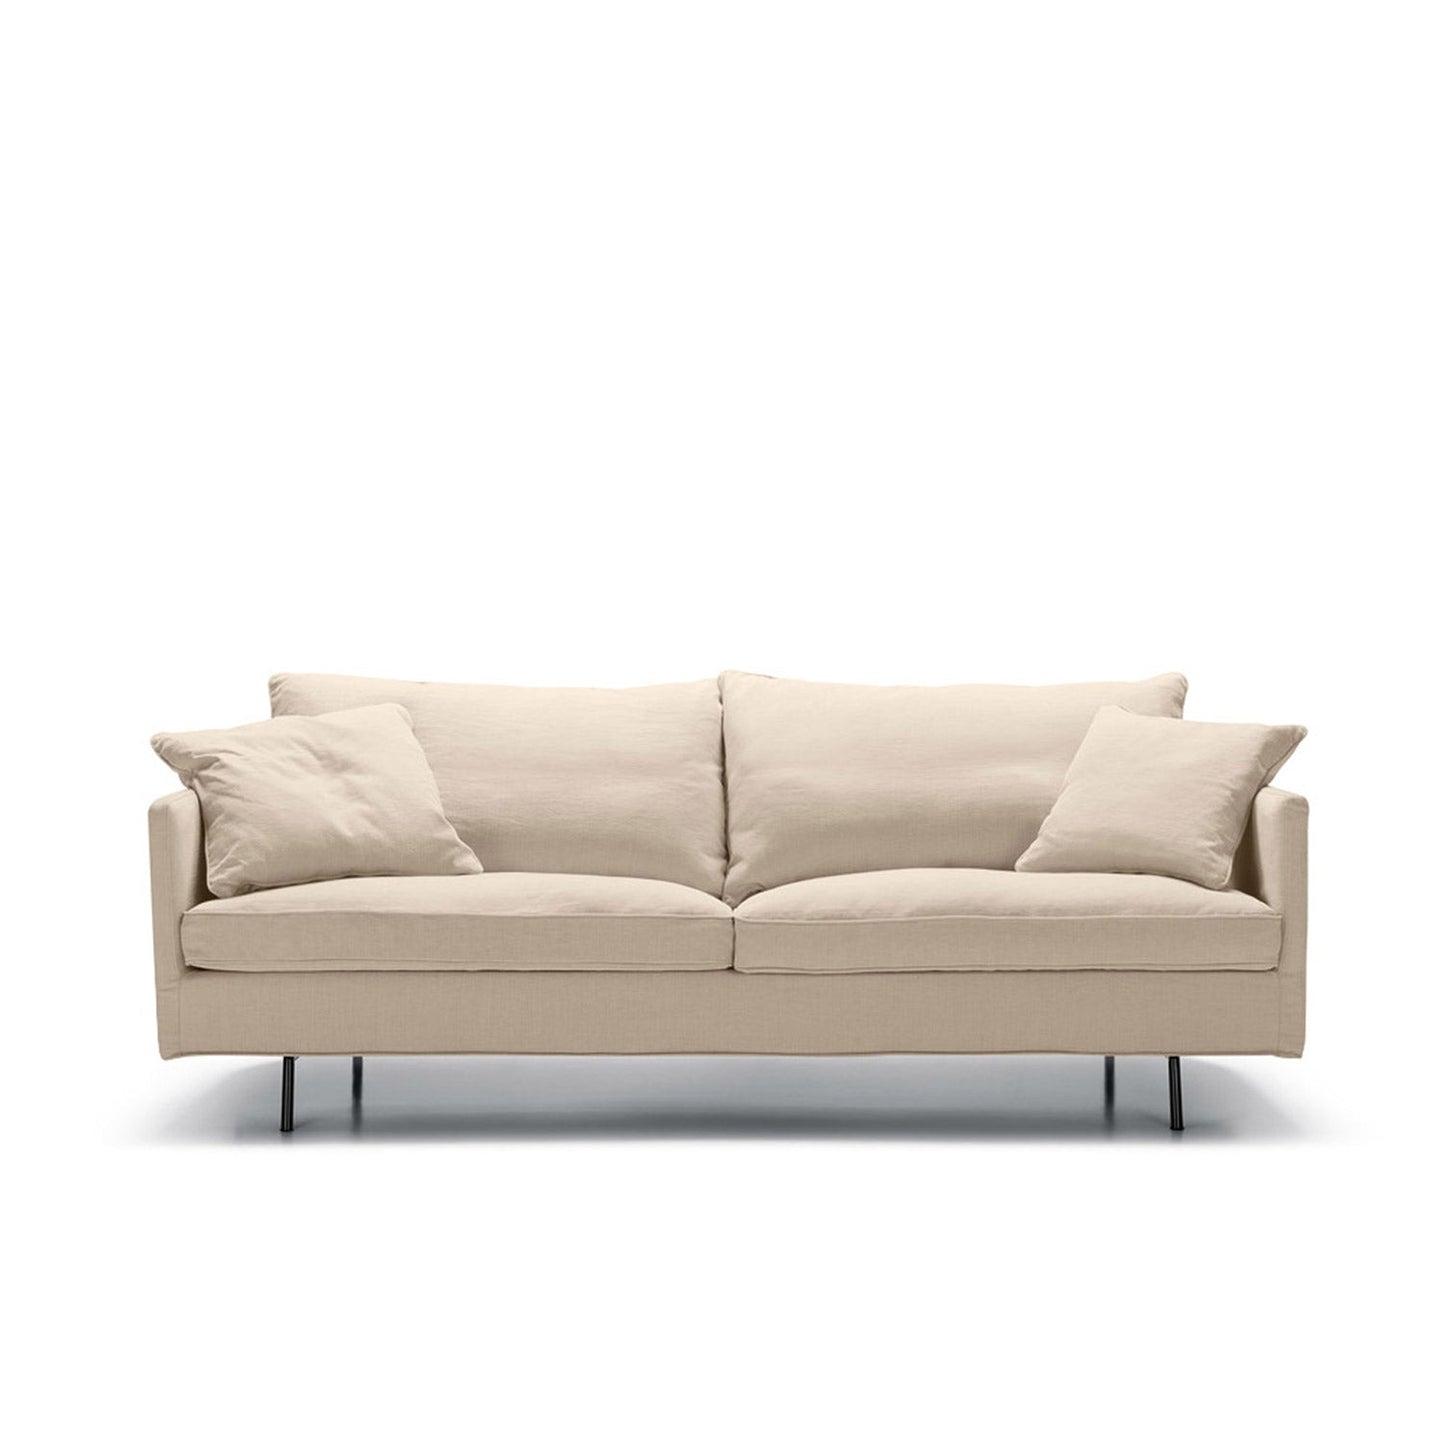 Julia 3-seter sofa Caleido Natur, en del av kategorien Fast-track sofa - At Home Interiør